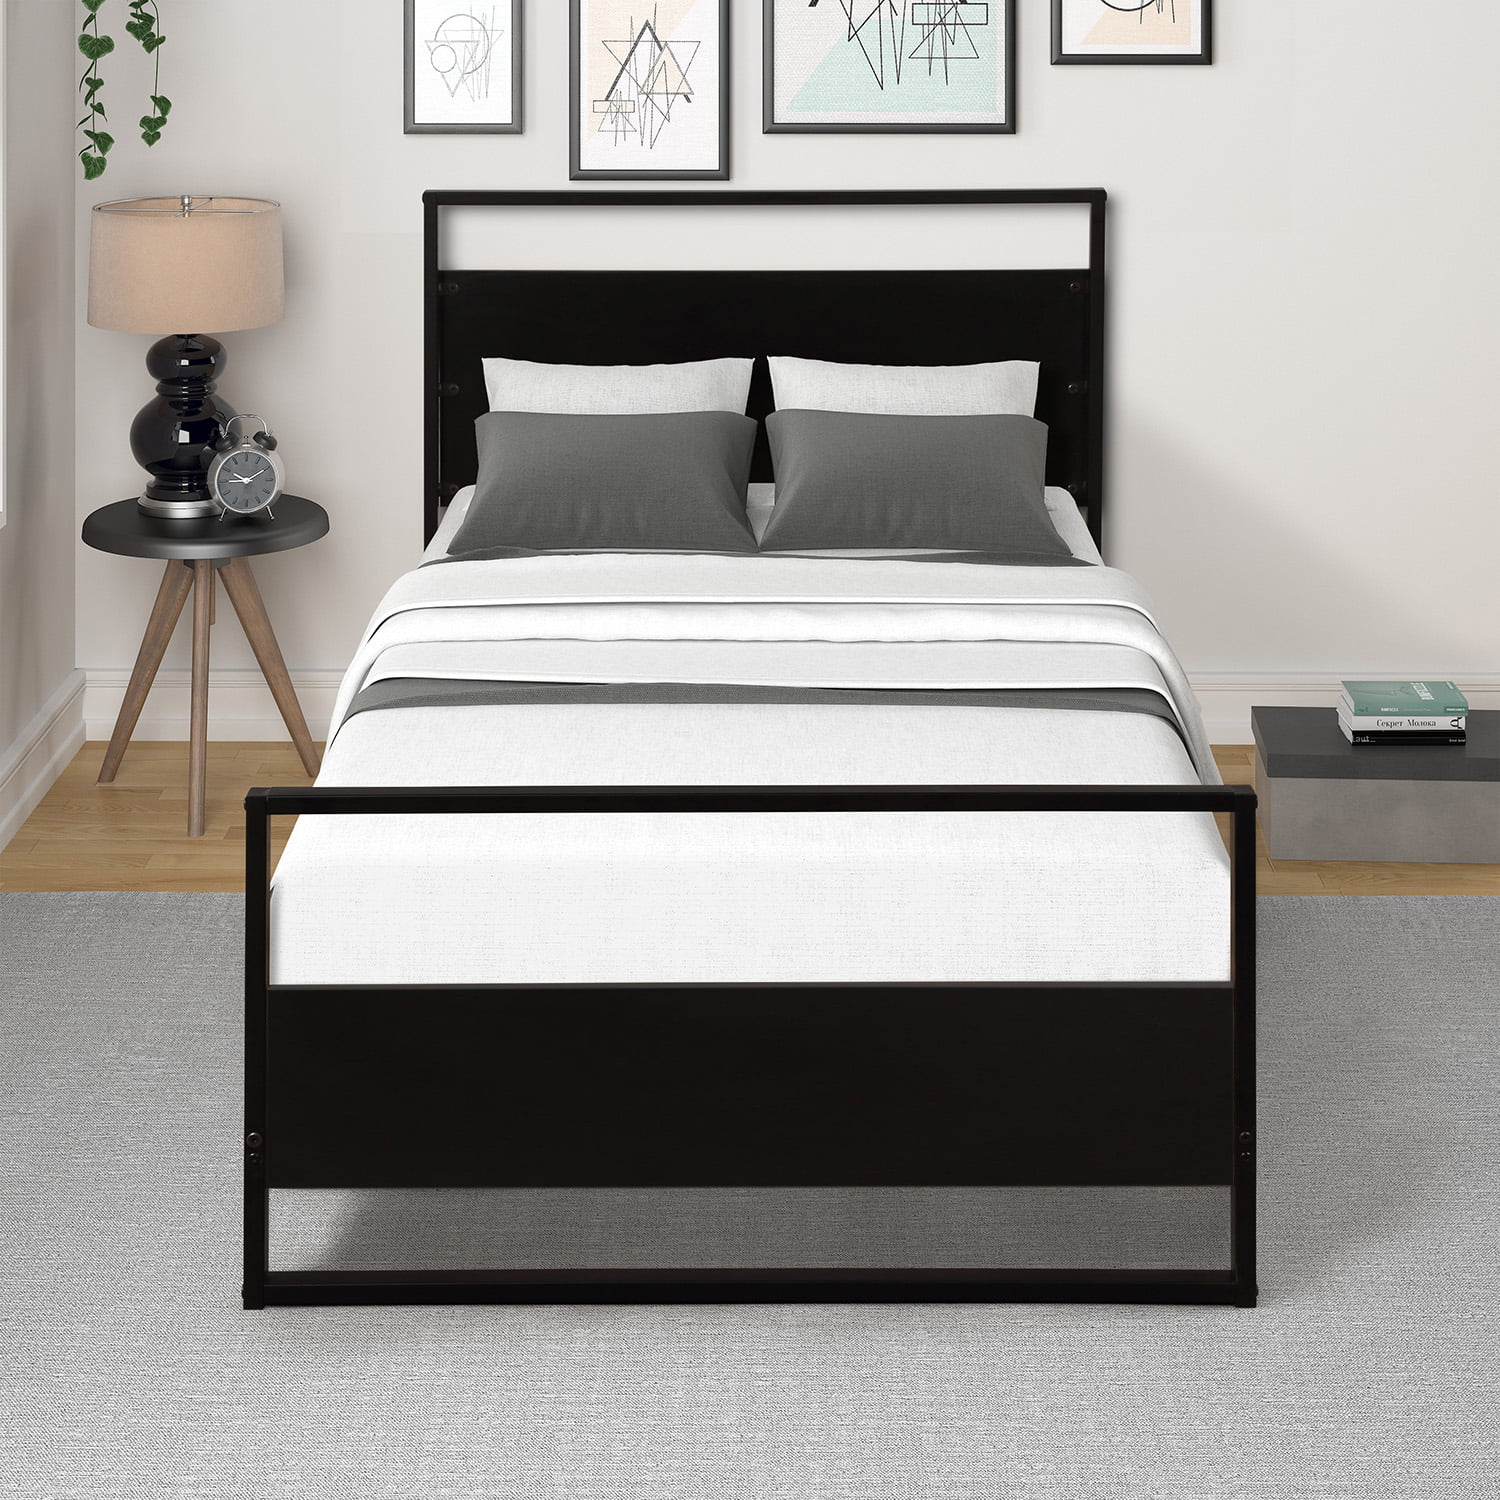 Twin Metal Bed Frame Black, Metal Twin Bed Headboard